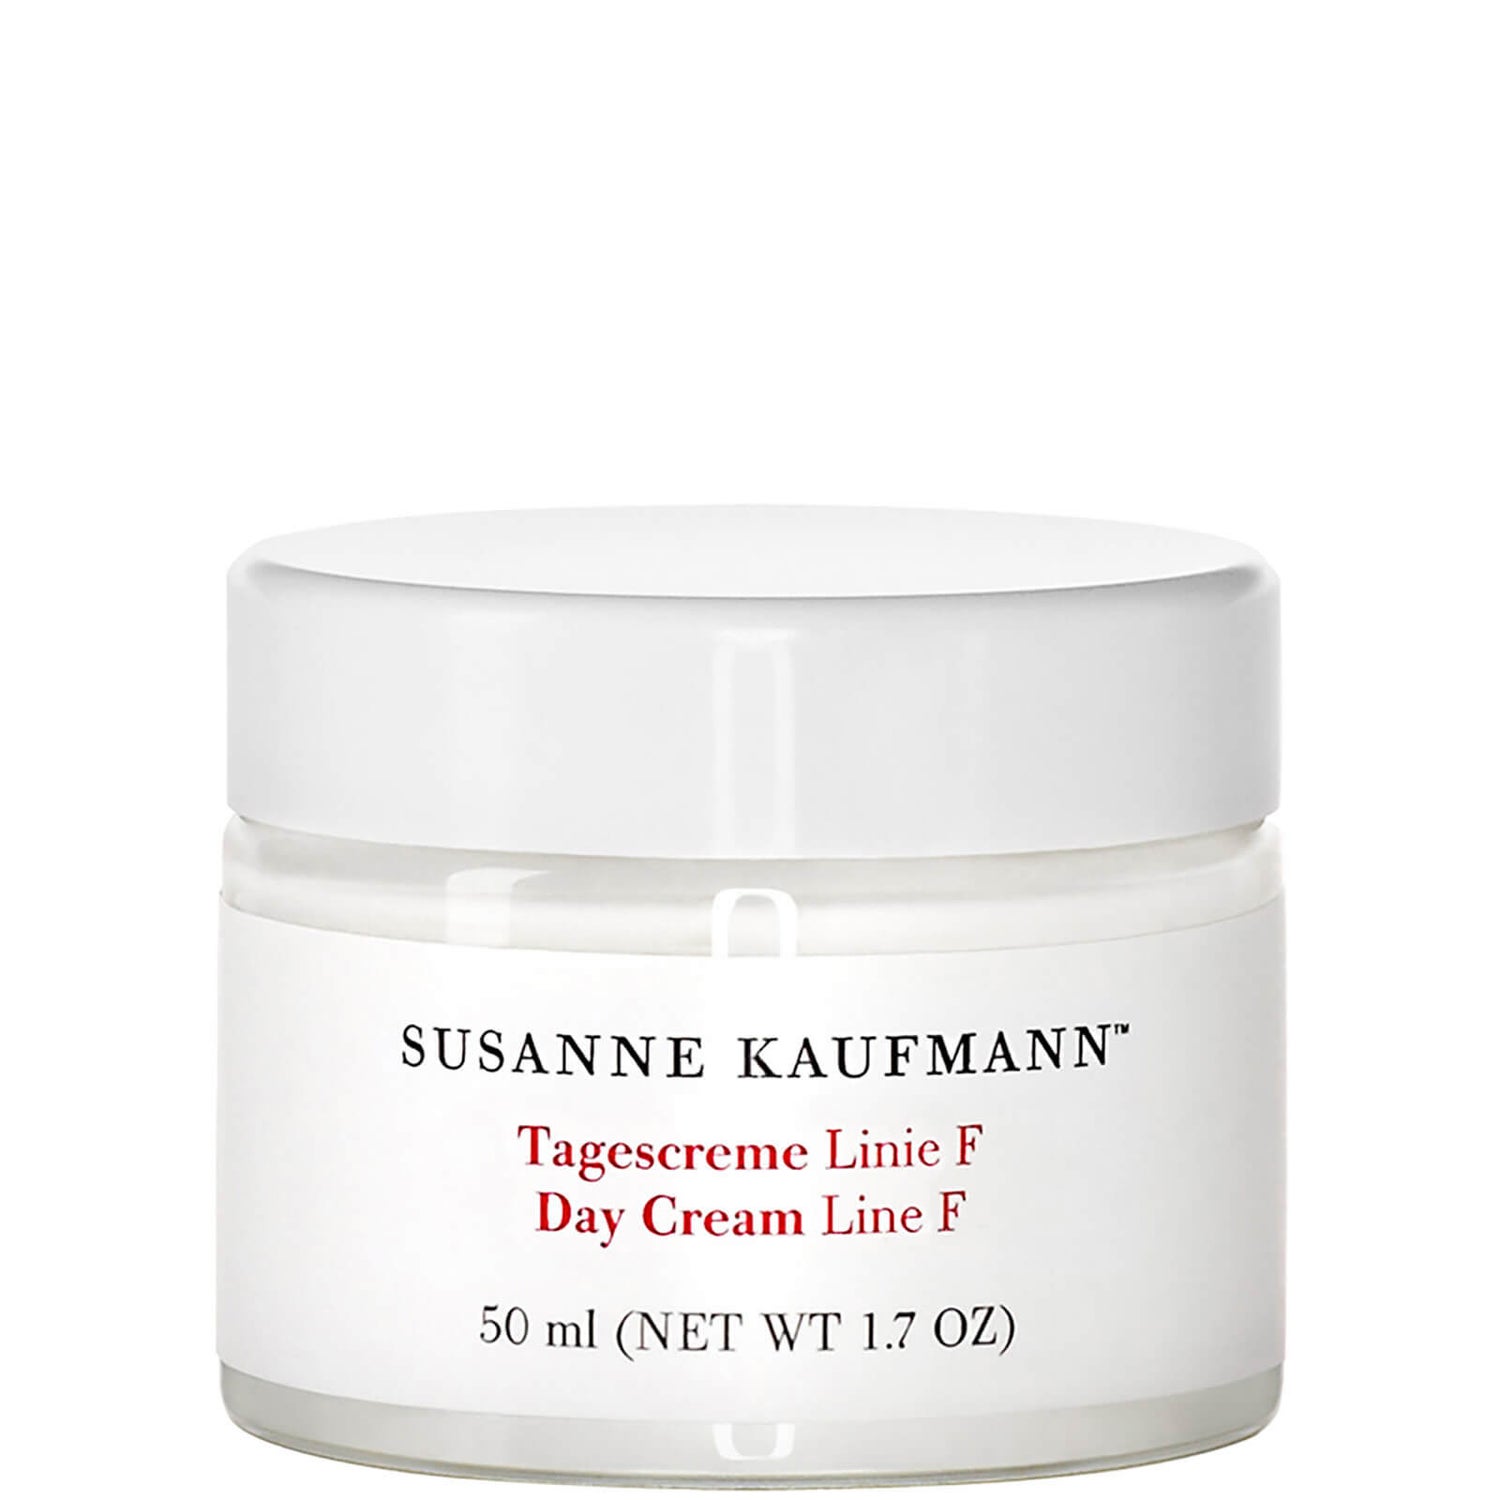 Susanne Kaufmann Day Cream Line F